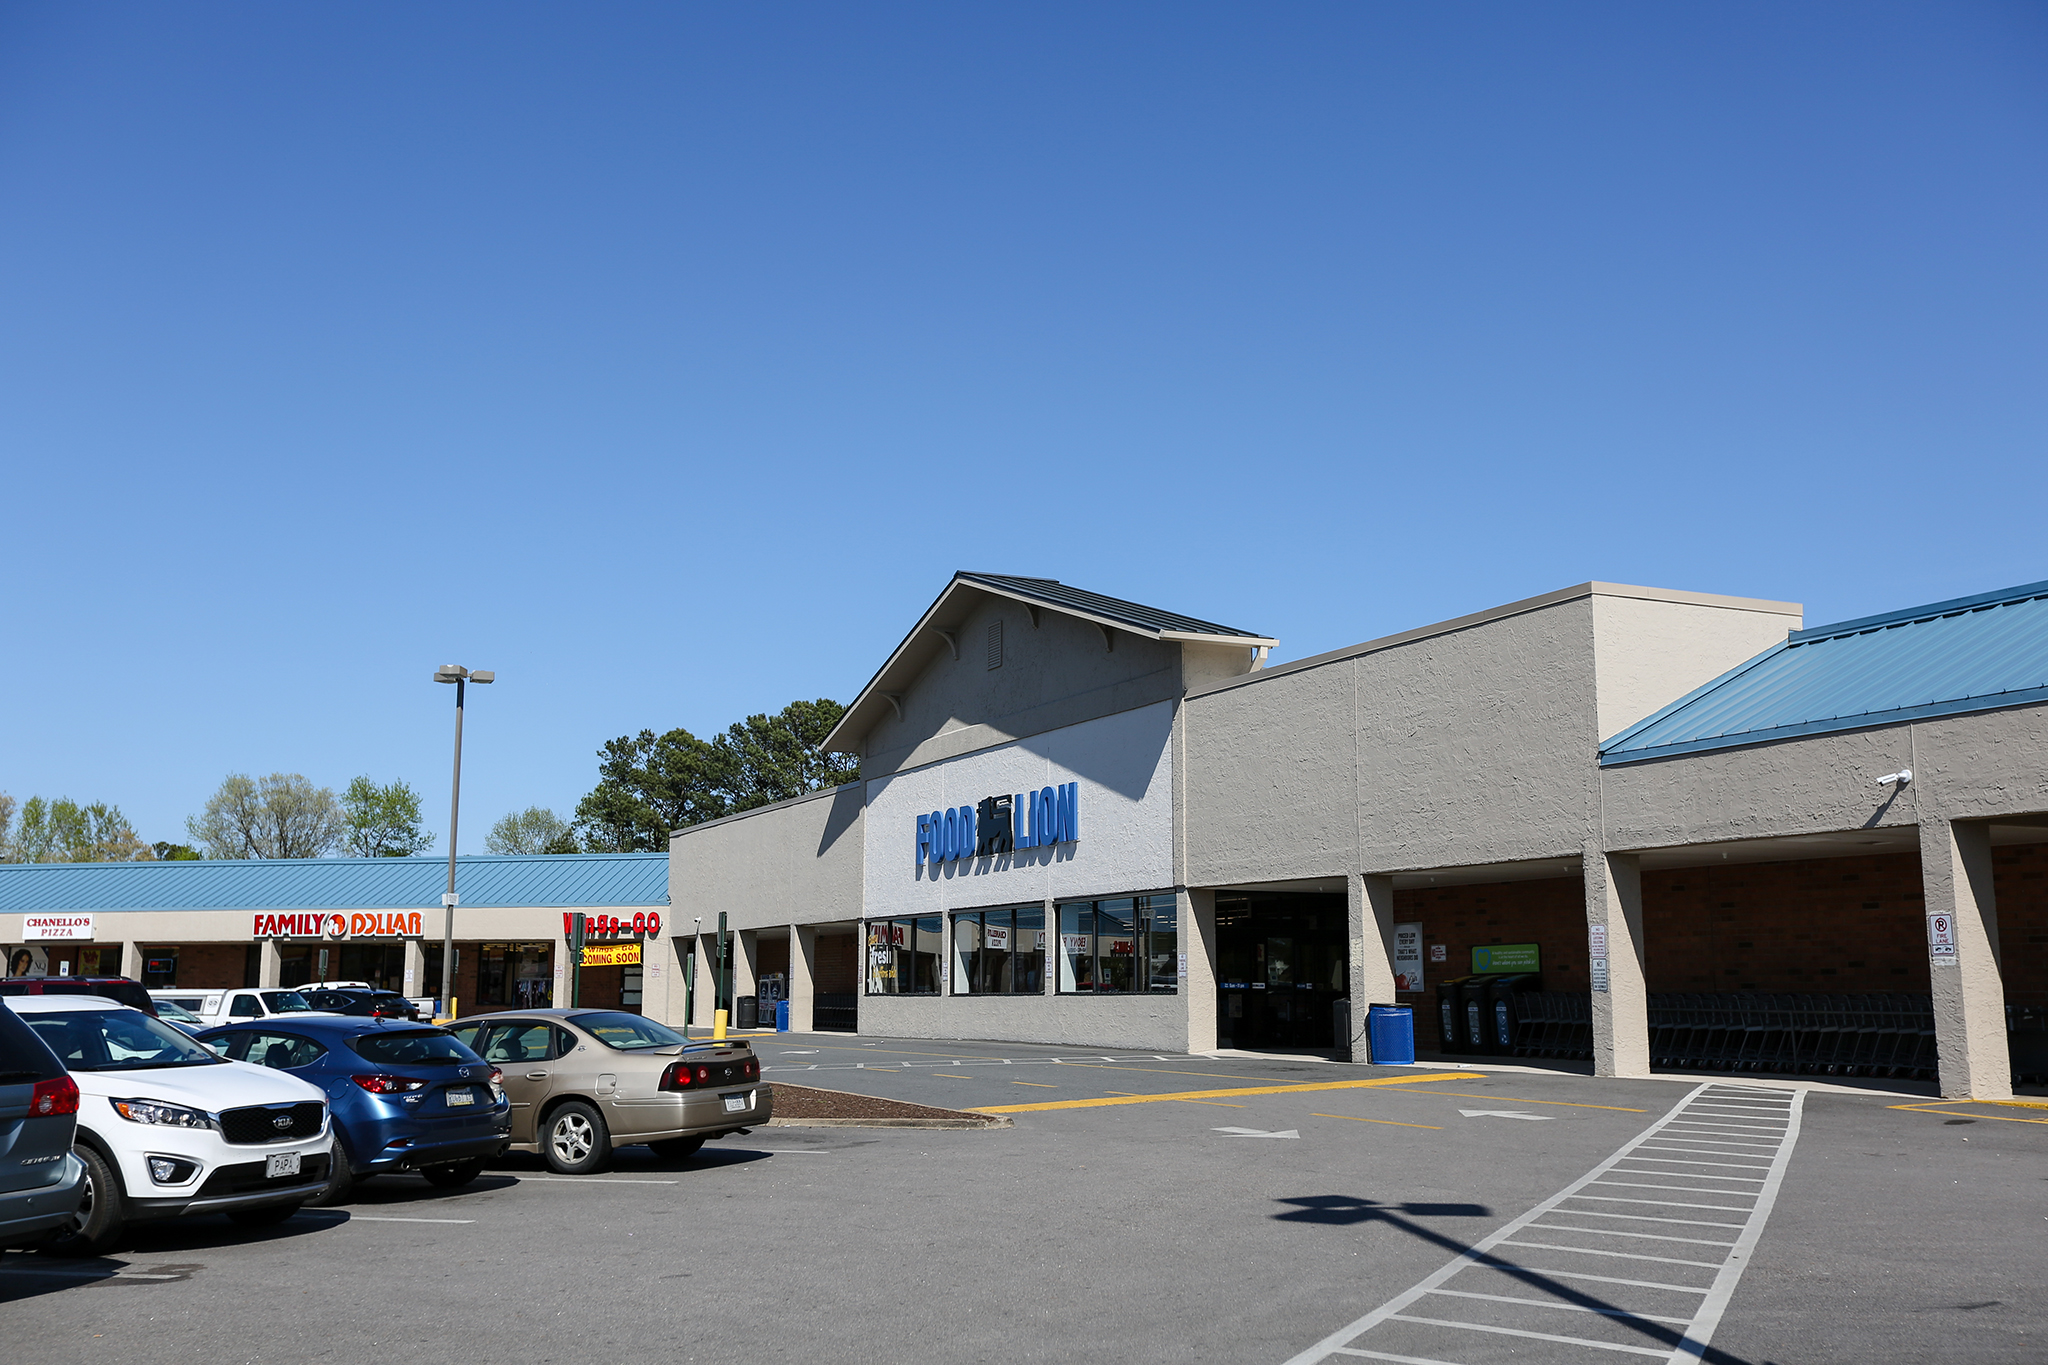 Birdneck Shopping Center